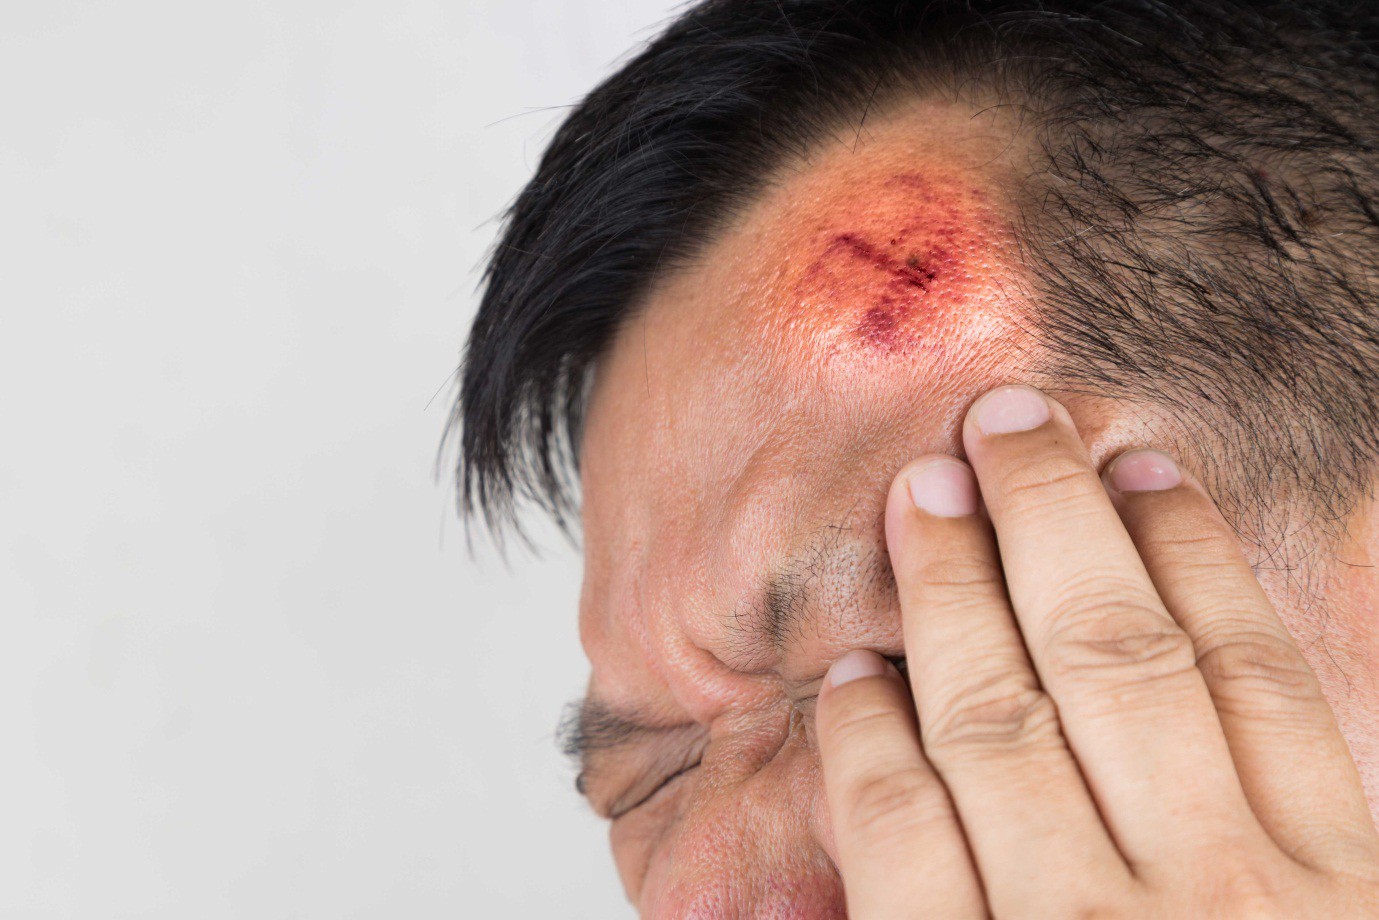 7 dấu hiệu cho thấy bạn cần đi cấp cứu sau một chấn thương đầu - Ảnh 1.